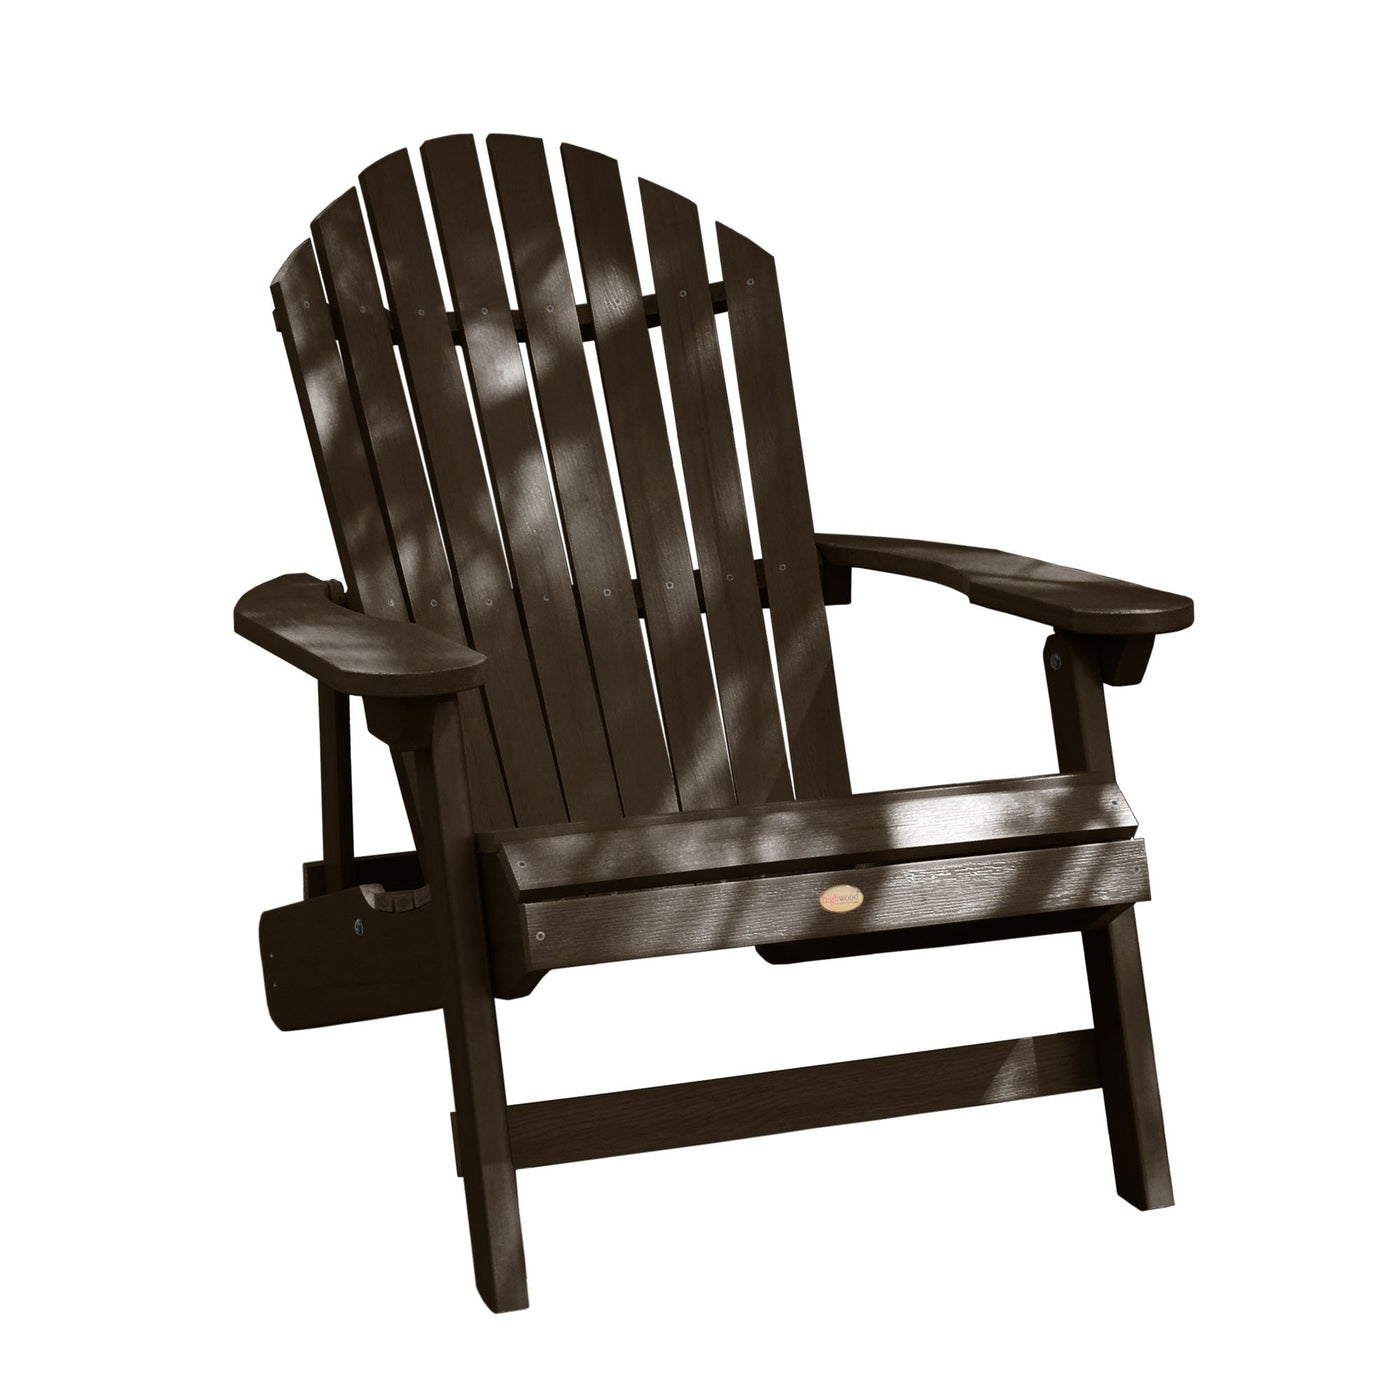 King Hamilton Folding & Reclining Adirondack Chair Highwood USA Weathered Acorn 